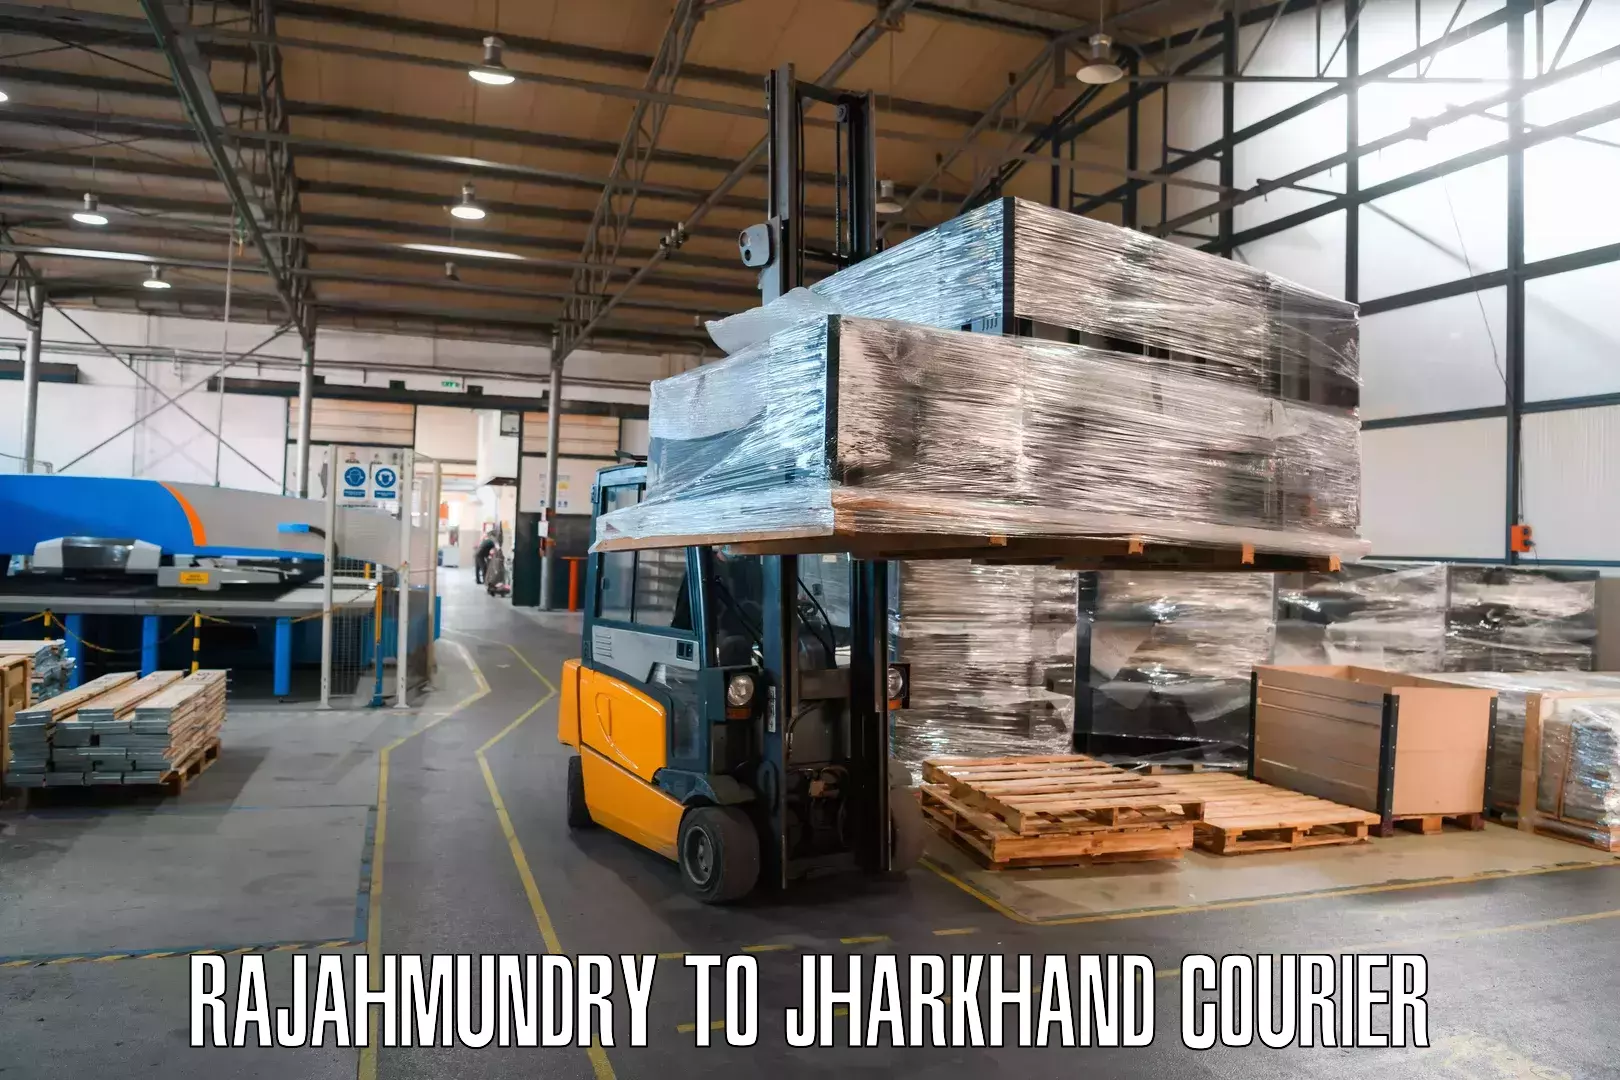 On-demand courier Rajahmundry to Jharkhand